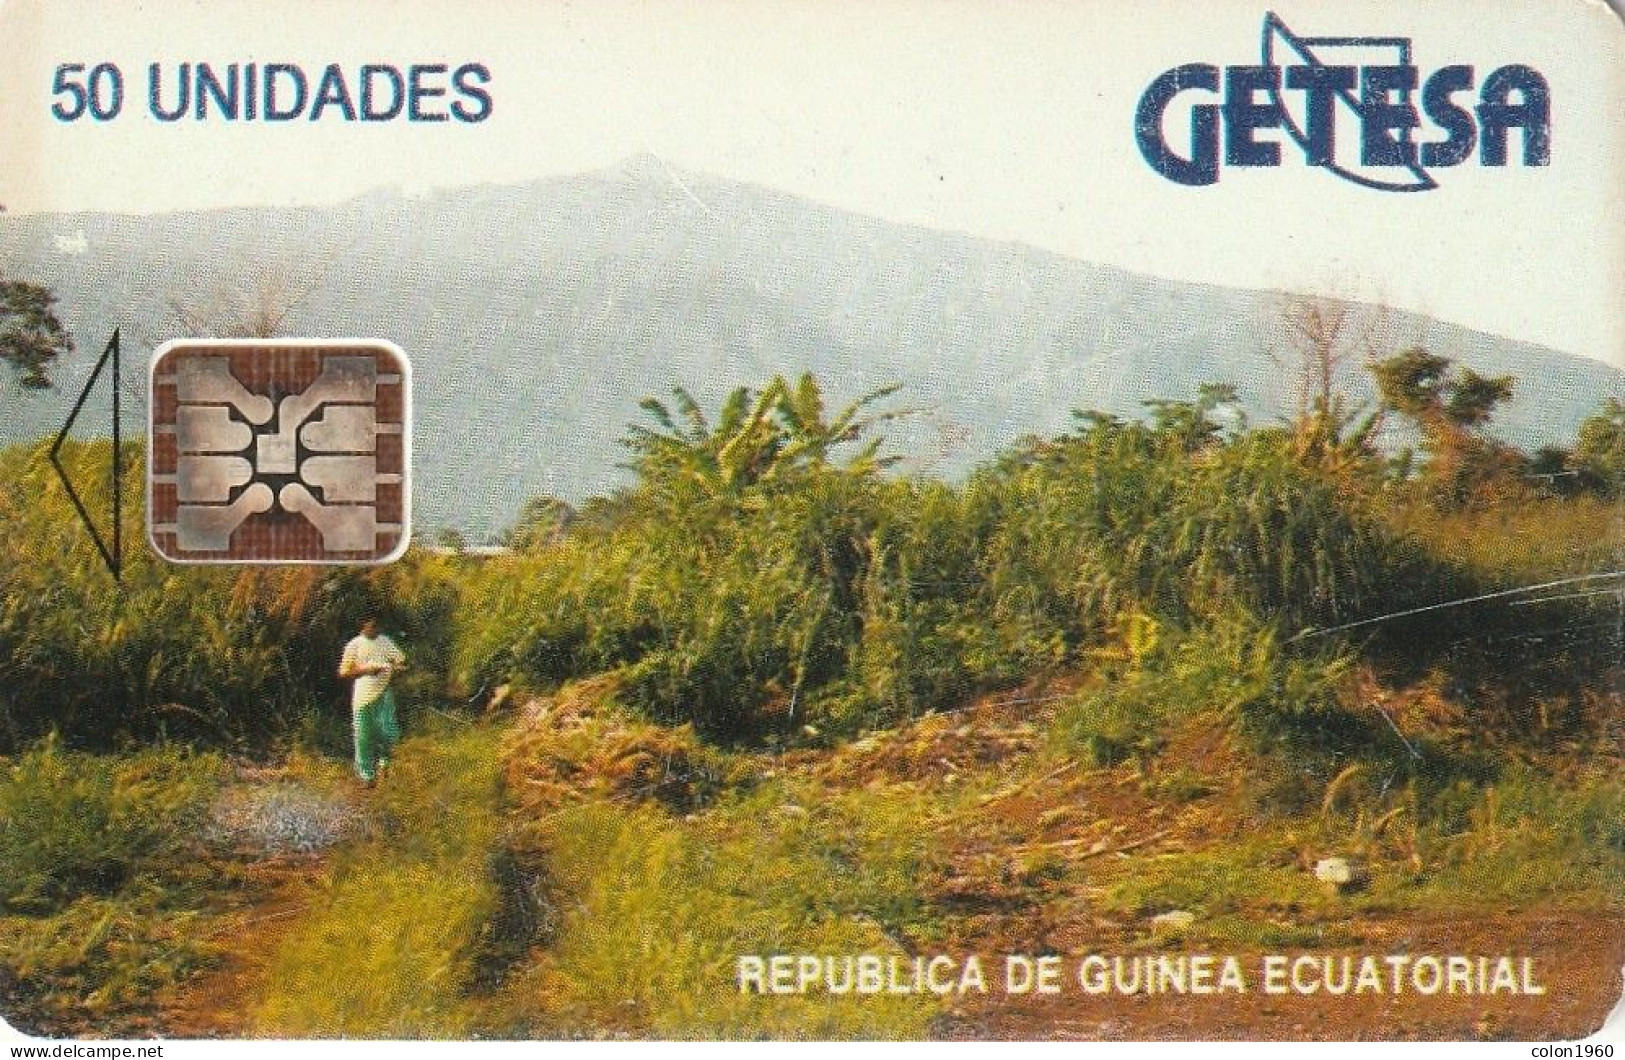 GUINEA ECUATORIAL. GQ-GET-0006B. Landscape-SC5 (Black Text - White). 1994. (002) - Equatorial Guinea